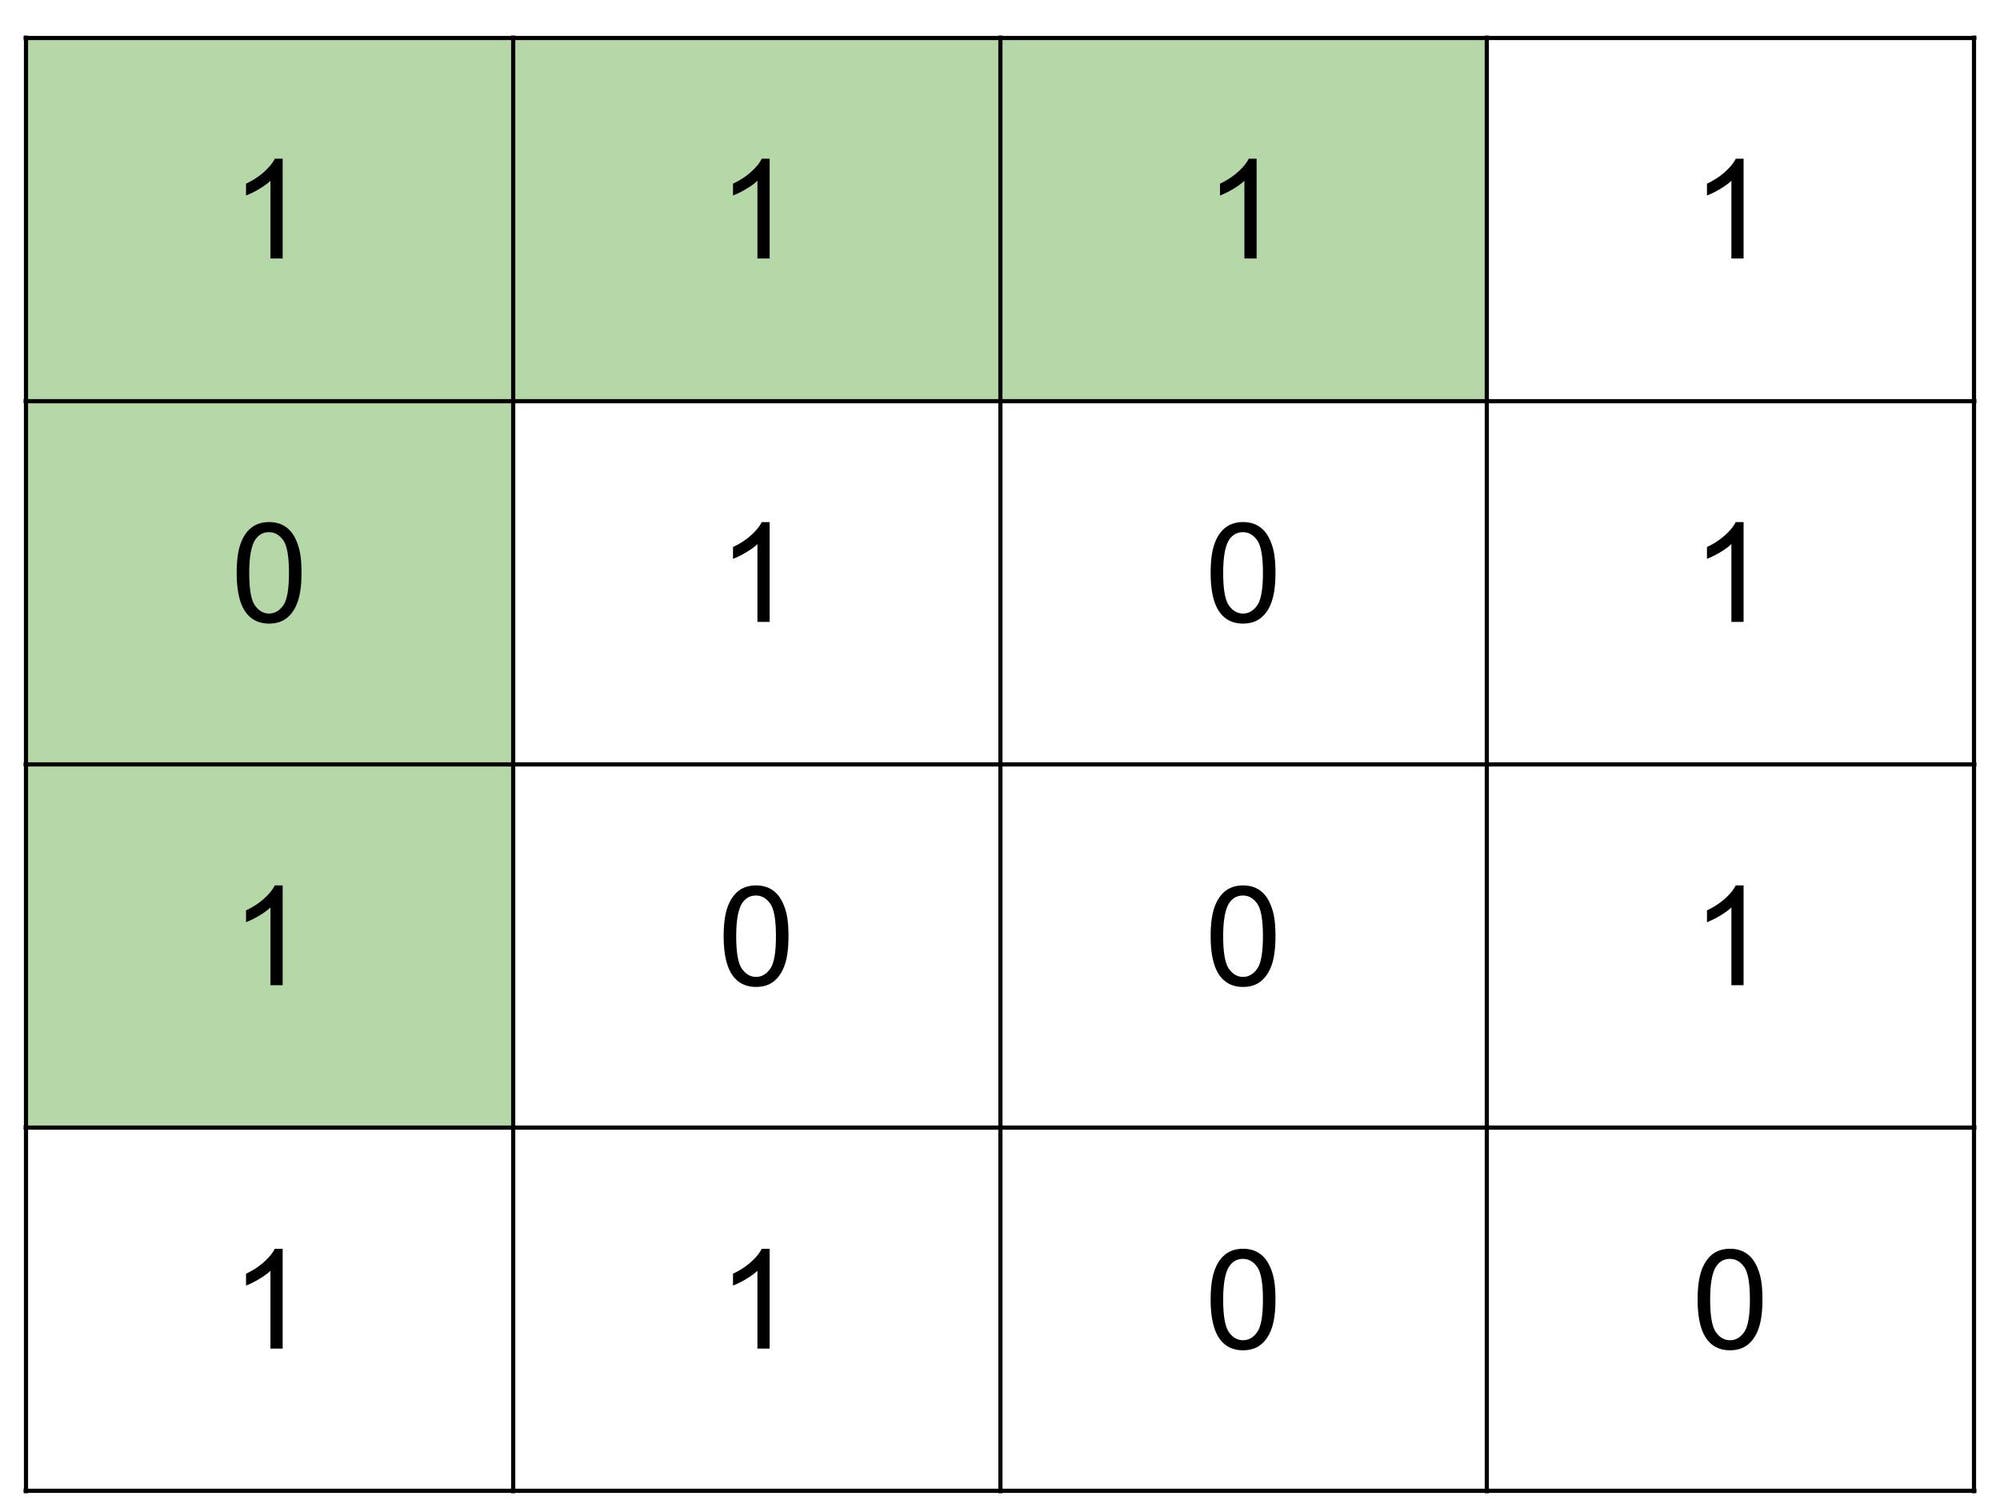 Tabelle mit Werten